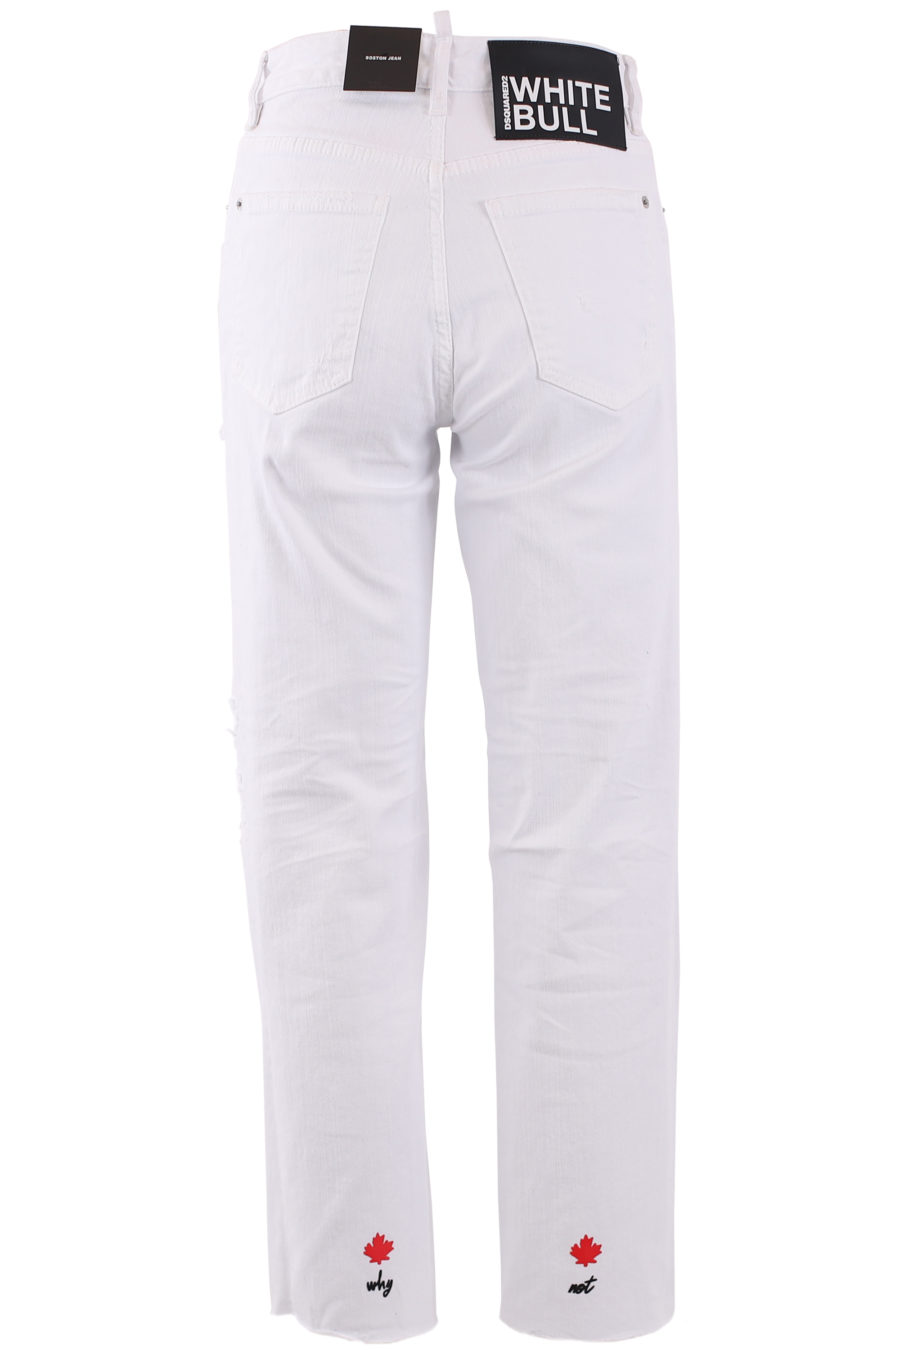 Pantalón tejano blanco desgastado "Boston jean" - IMG 6714